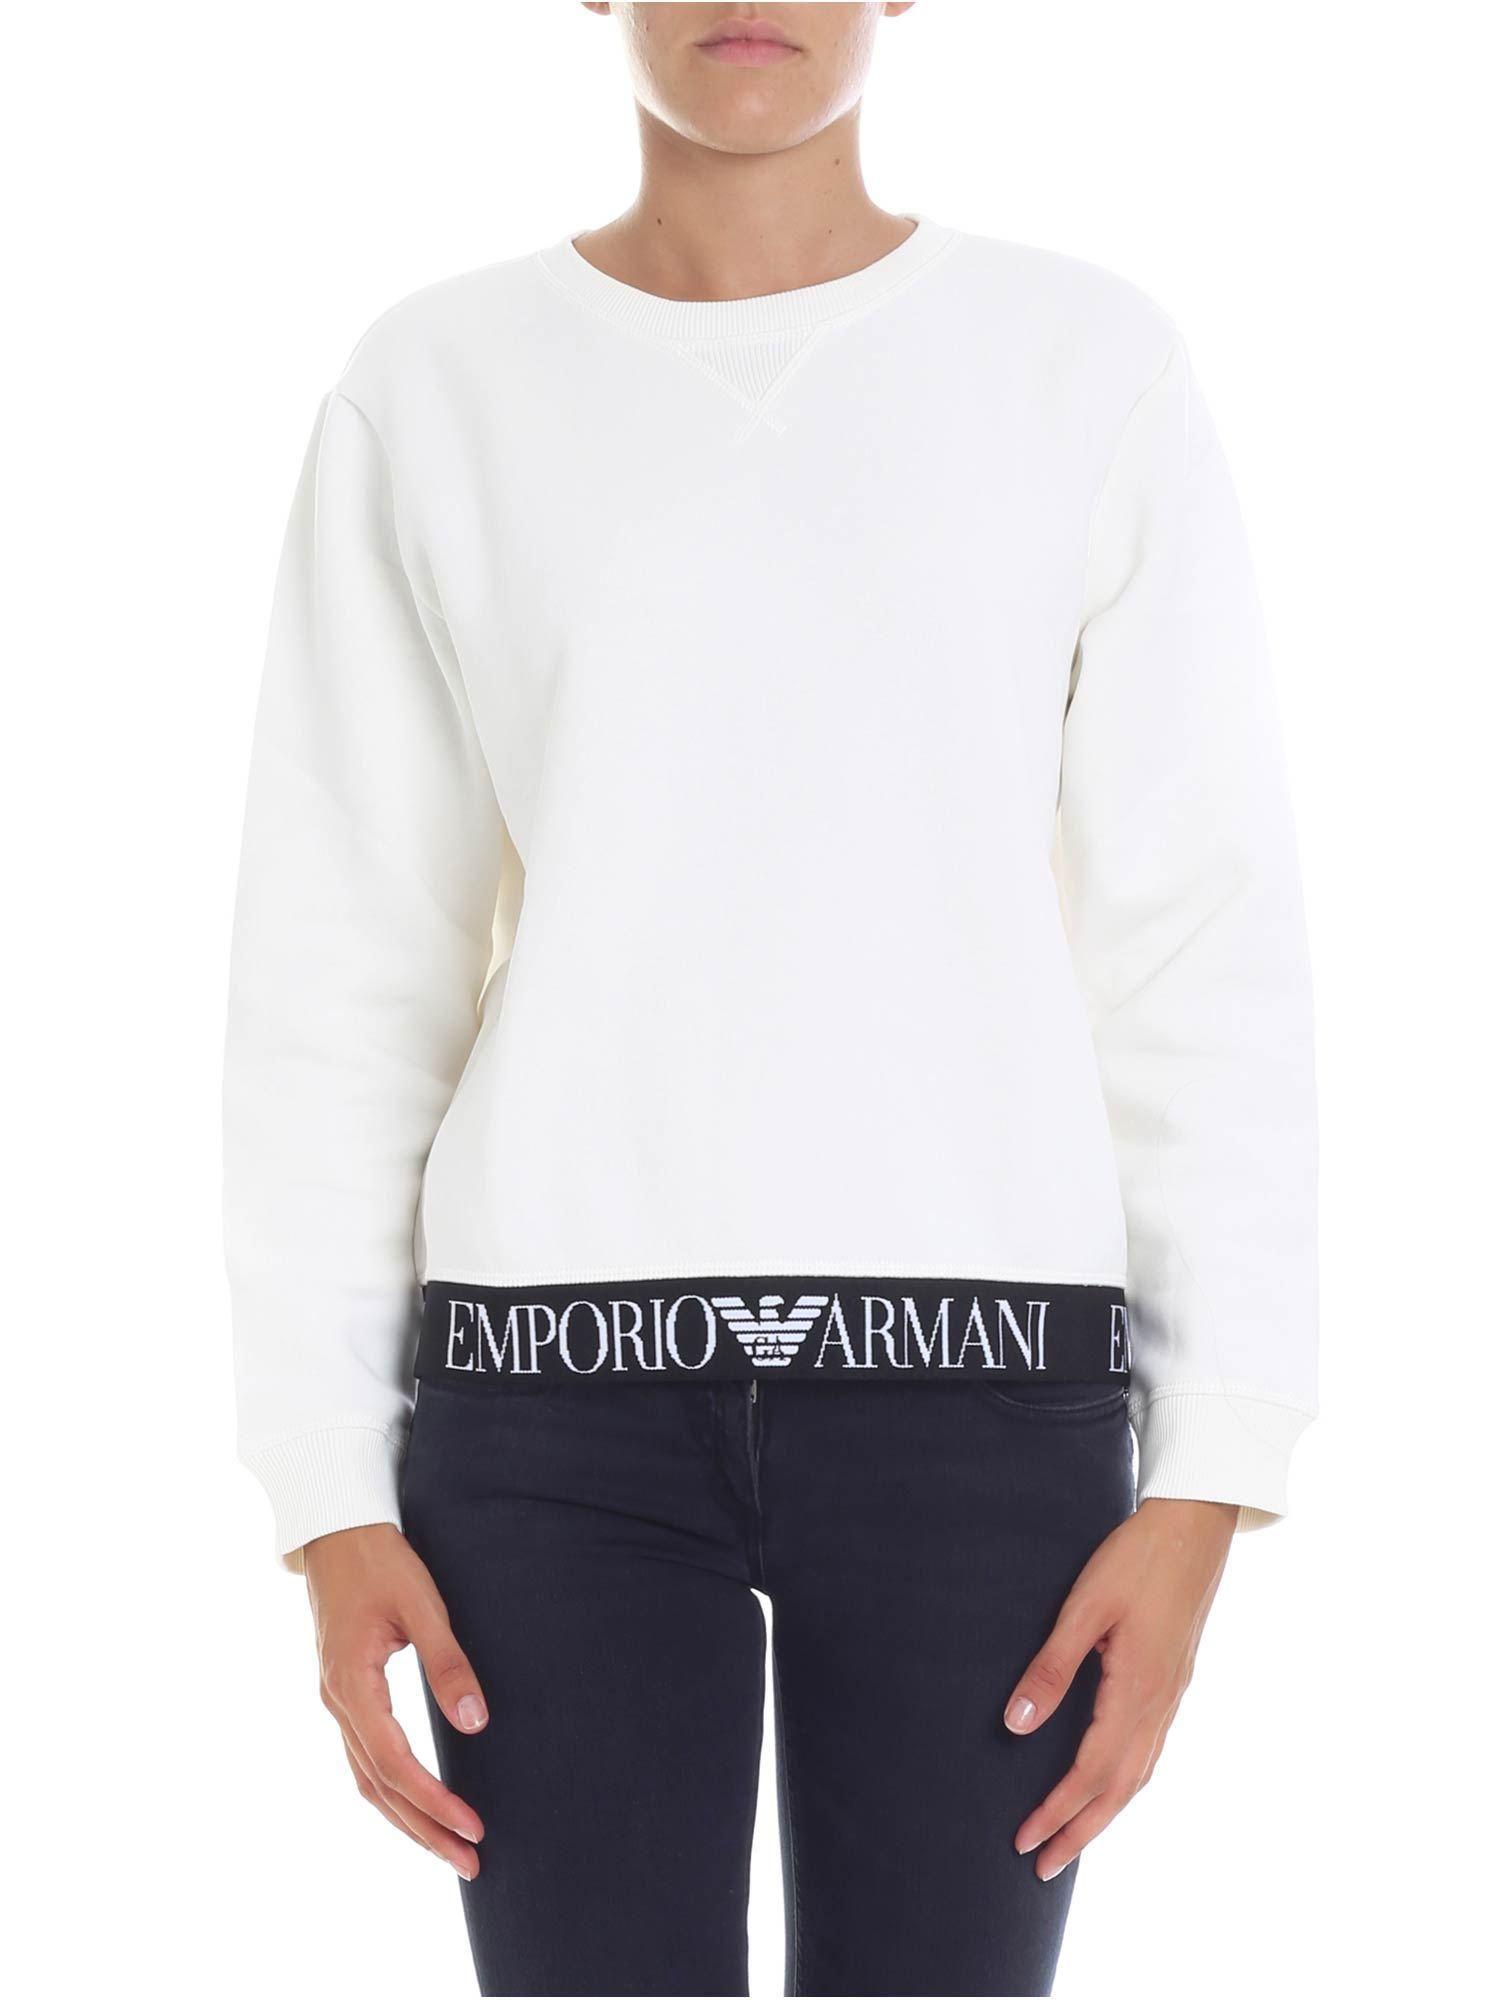 Cream Colored Logo - Emporio Armani Cream Colored Sweatshirt With Logo in White - Lyst